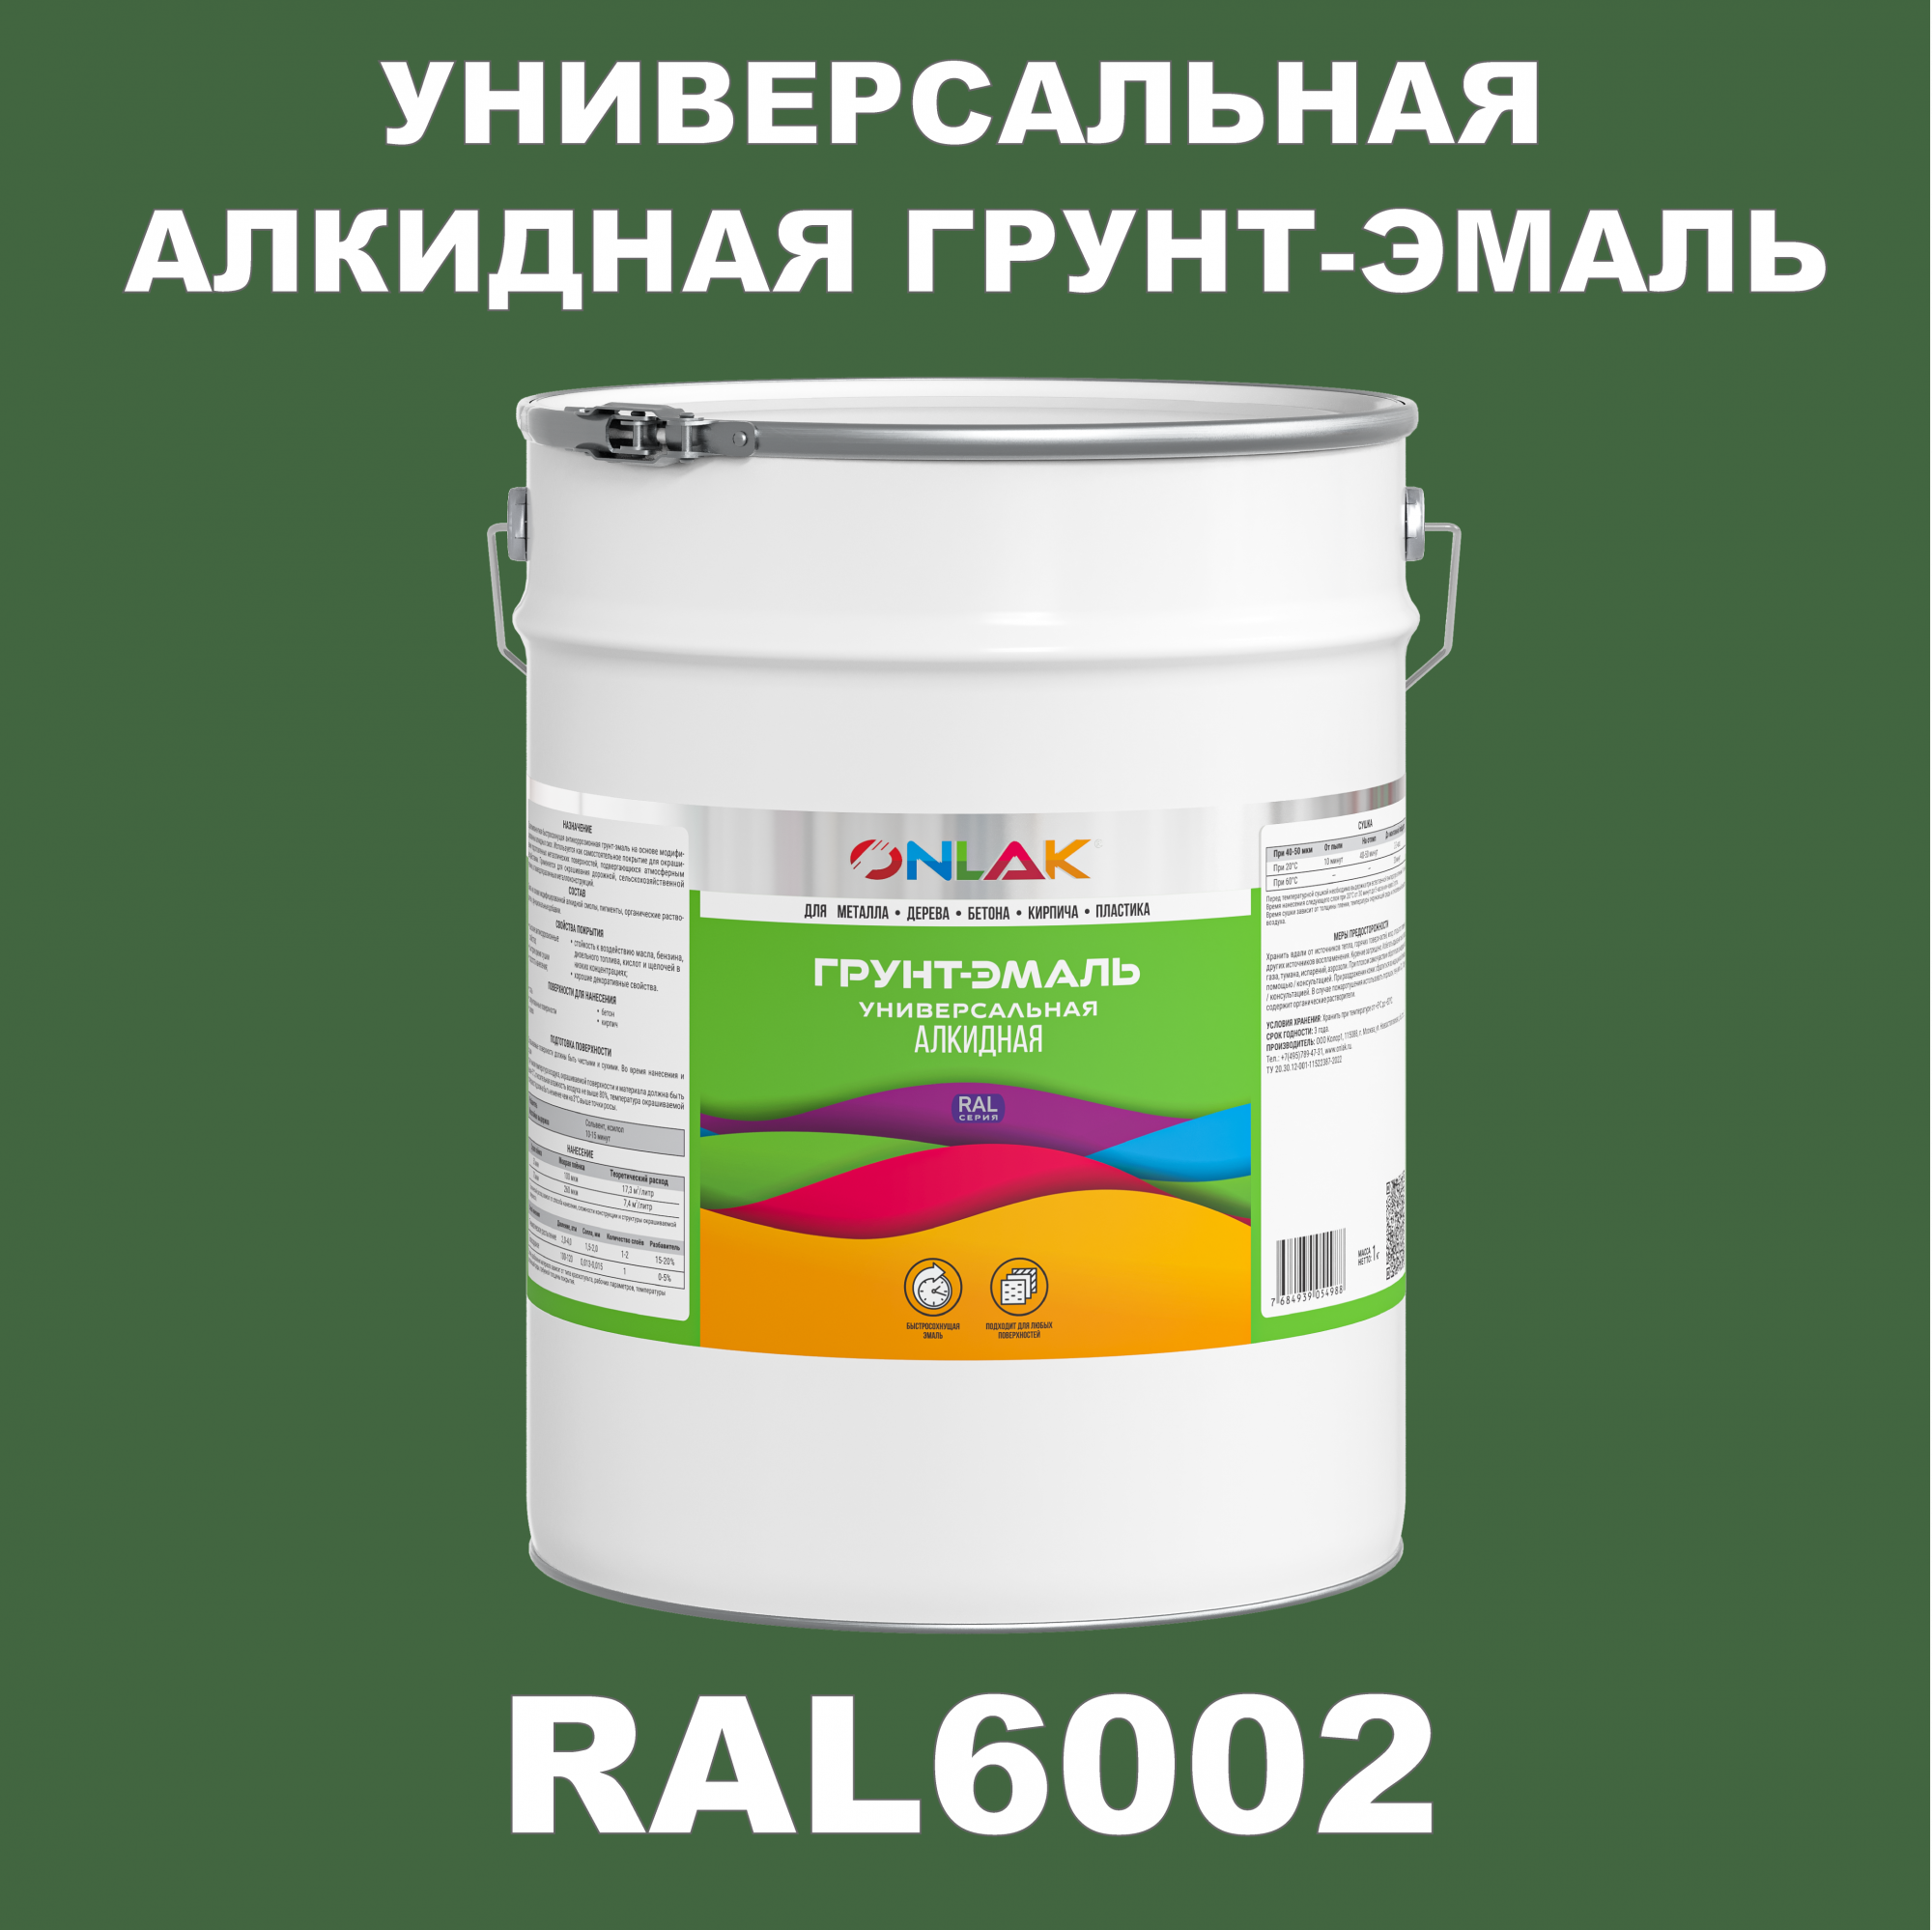 Грунт-эмаль ONLAK 1К RAL6002 антикоррозионная алкидная по металлу по ржавчине 20 кг грунт эмаль yollo по ржавчине алкидная синяя 0 9 кг